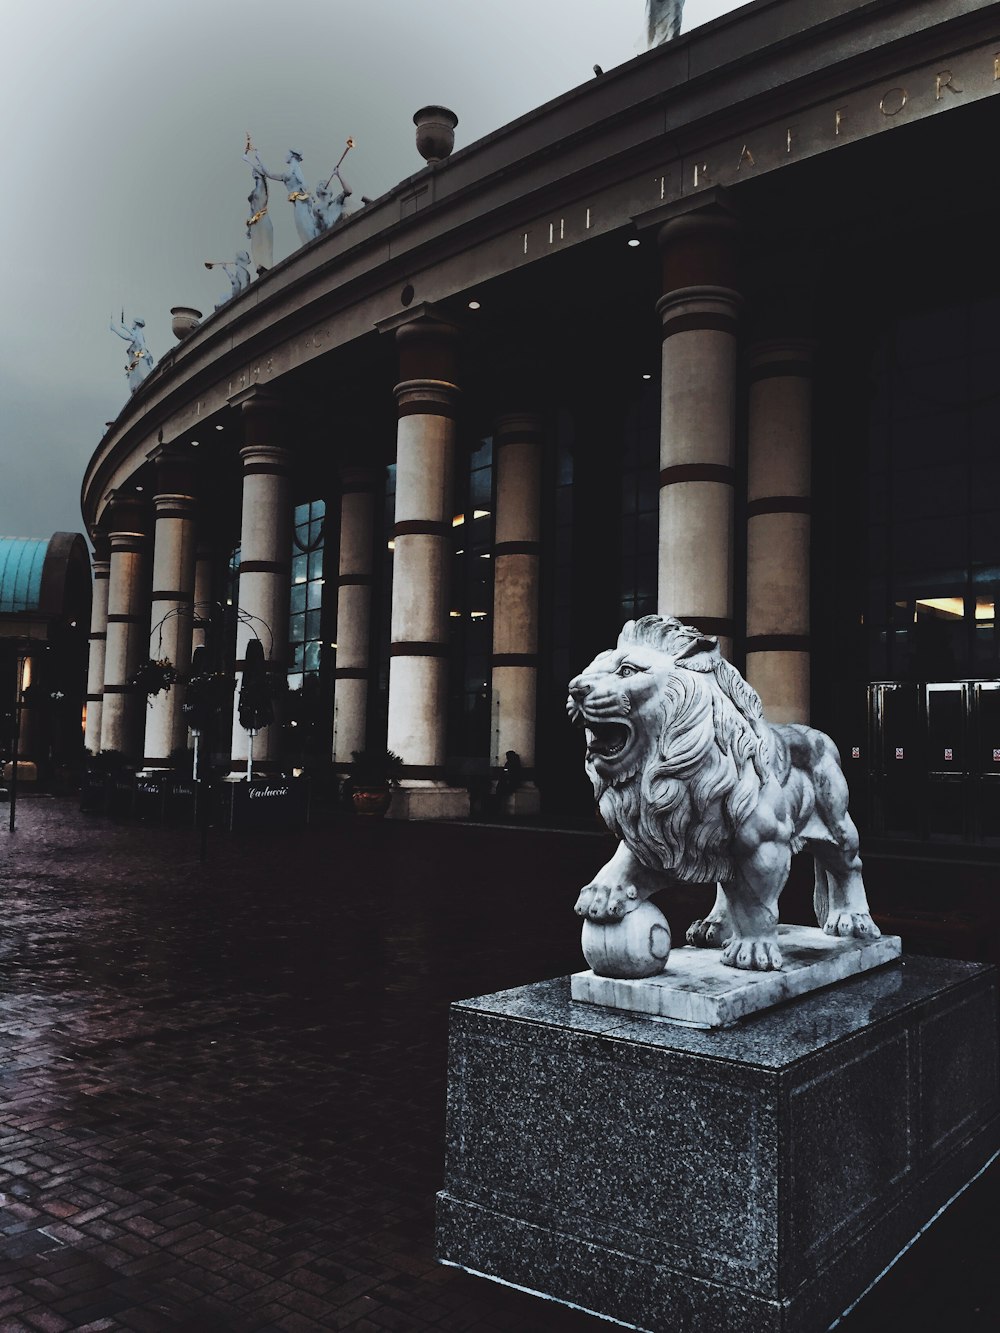 Statue de lion adulte sur une base en béton devant un bâtiment avec des piliers extérieurs